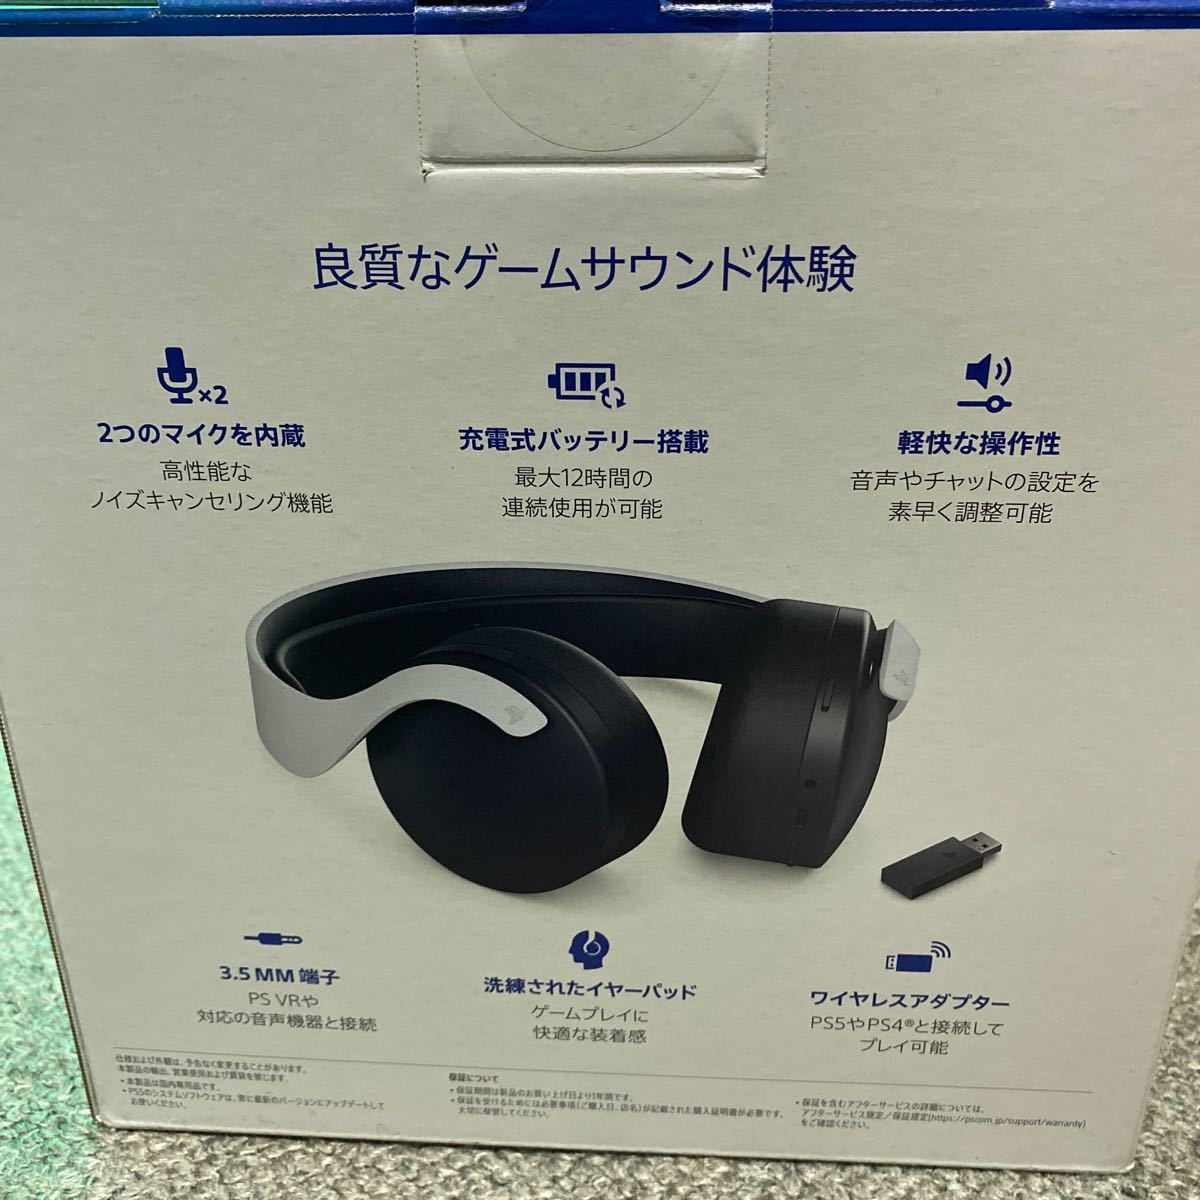 【純正品】PULSE 3D ワイヤレスヘッドセット (CFI-ZWH1J) 新品未開封